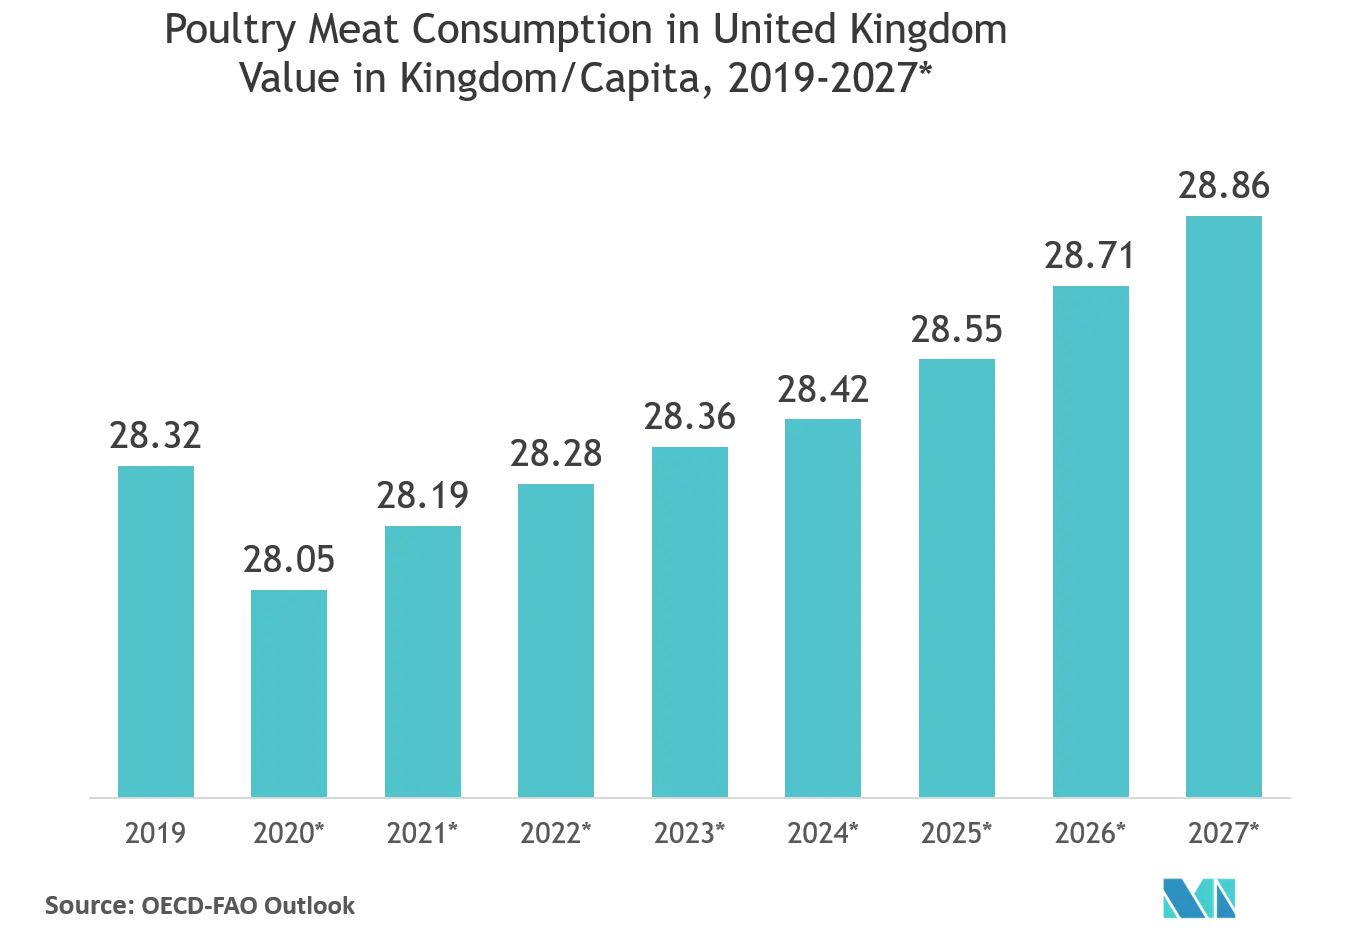 Thị trường bao bì thịt Tiêu thụ thịt gia cầm ở Vương quốc Anh Giá trị theo Vương quốc / Đầu người, 2019 - 2027